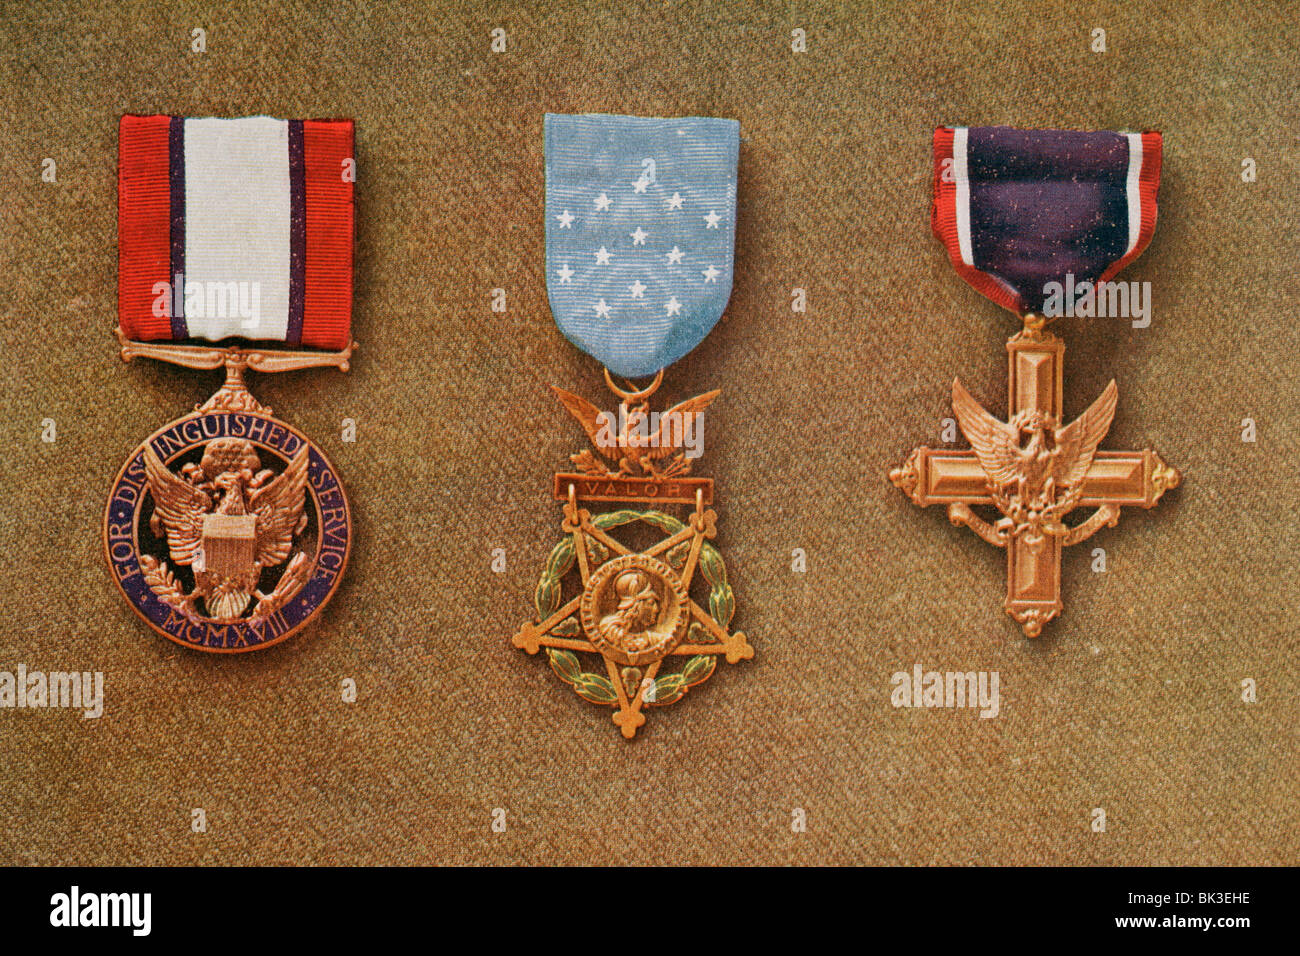 3 guerra americana decorazioni.da sinistra a destra: Distinguished Service Medal Congressional Medal of Honor, la traversa di servizio distinto Foto Stock